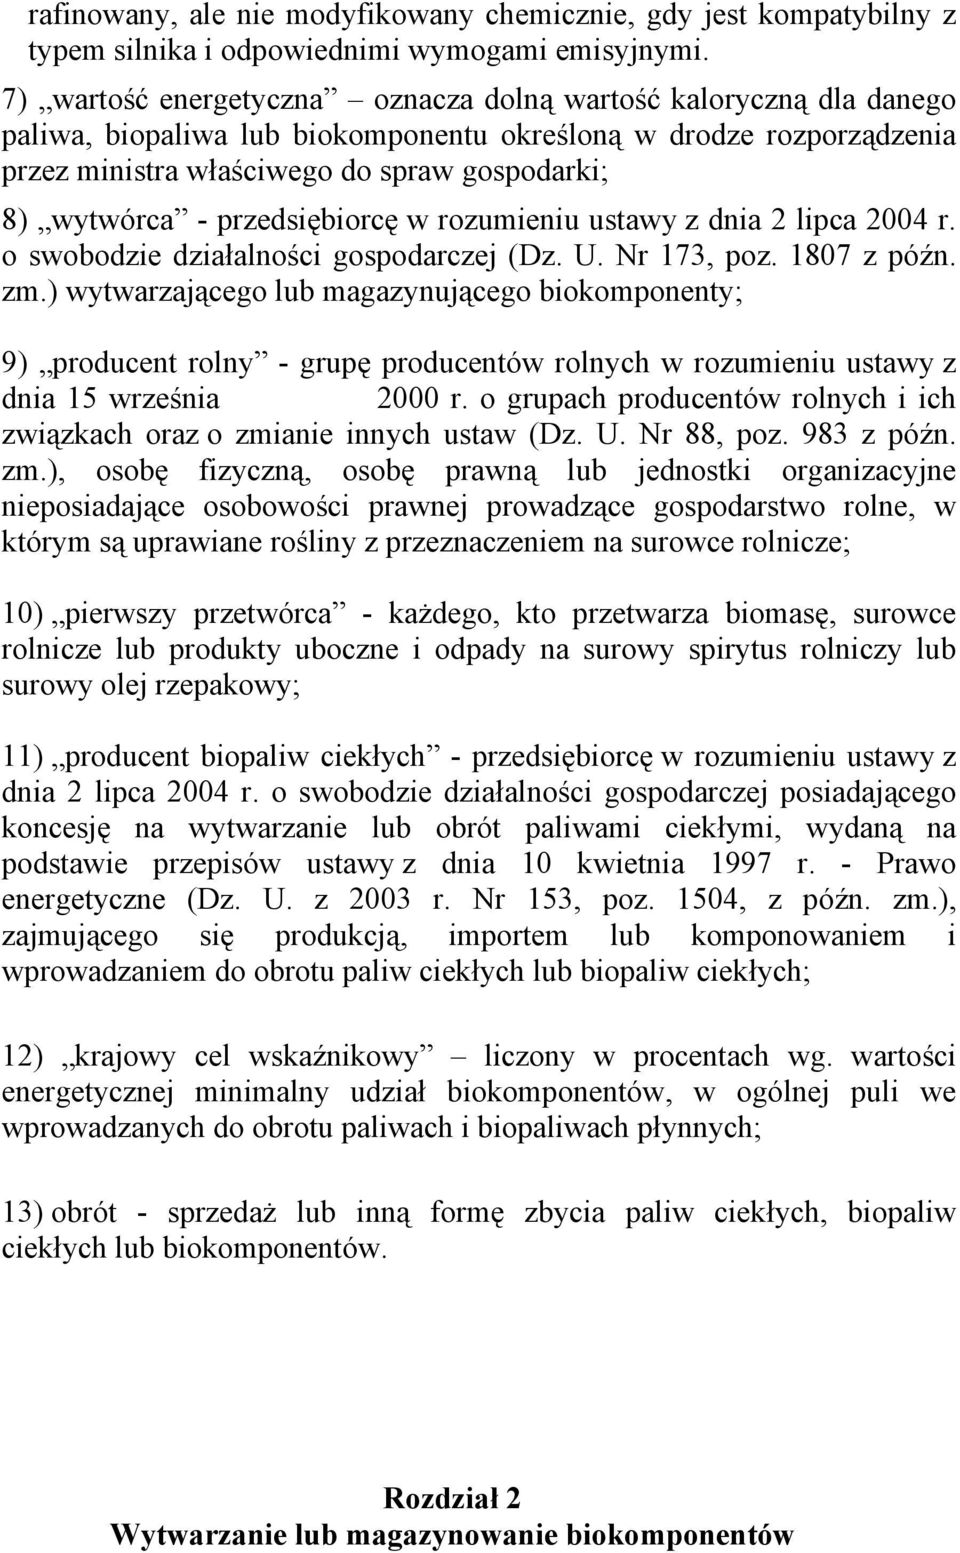 przedsiębiorcę w rozumieniu ustawy z dnia 2 lipca 2004 r. o swobodzie działalności gospodarczej (Dz. U. Nr 173, poz. 1807 z późn. zm.